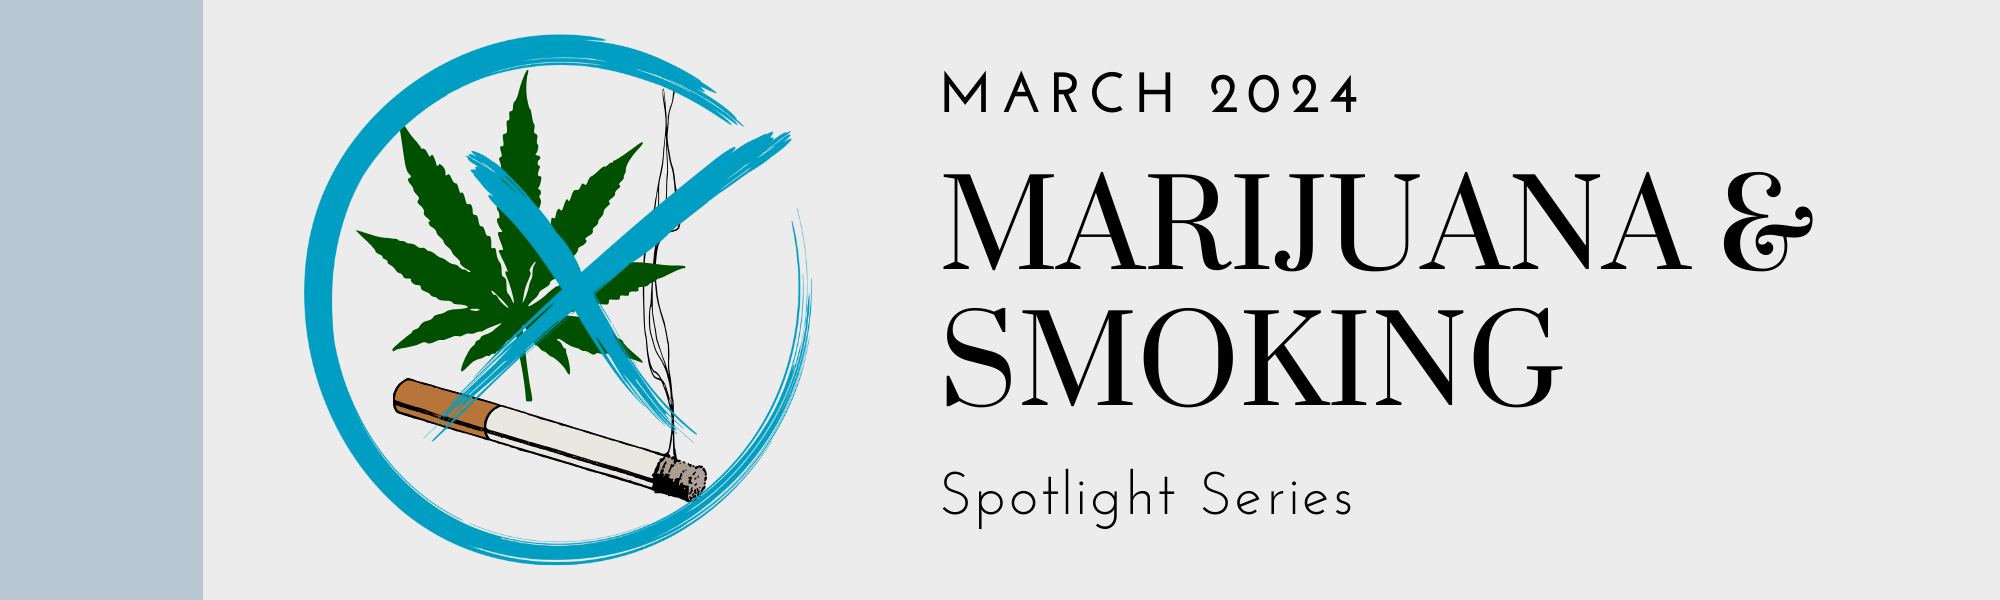 March 2024 Marijuana and Smoking Spotlight Series